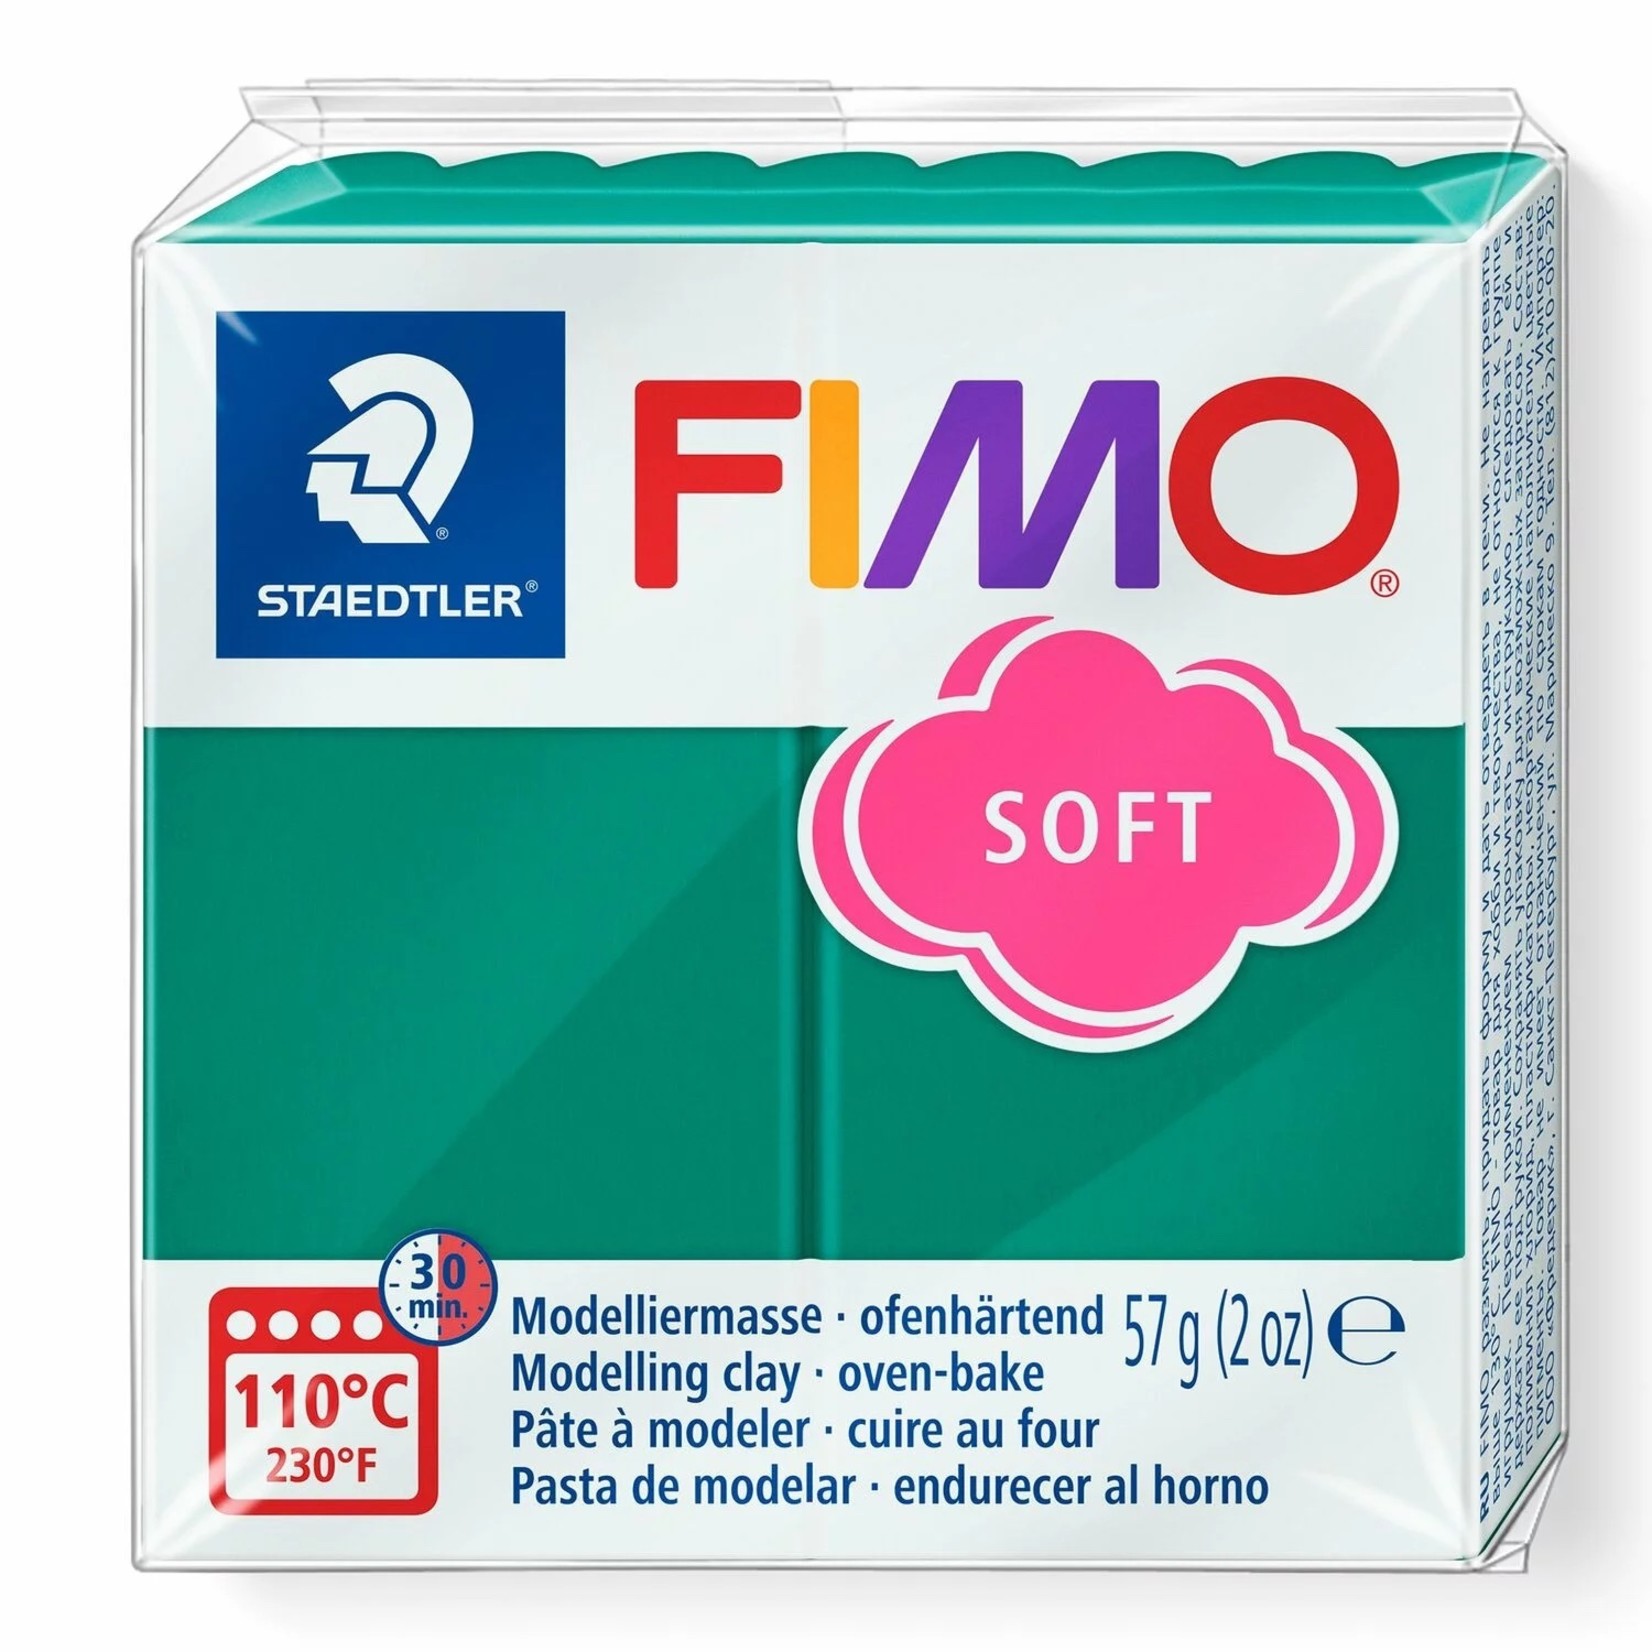 STAEDTLER FIMO SOFT 56 EMERALD